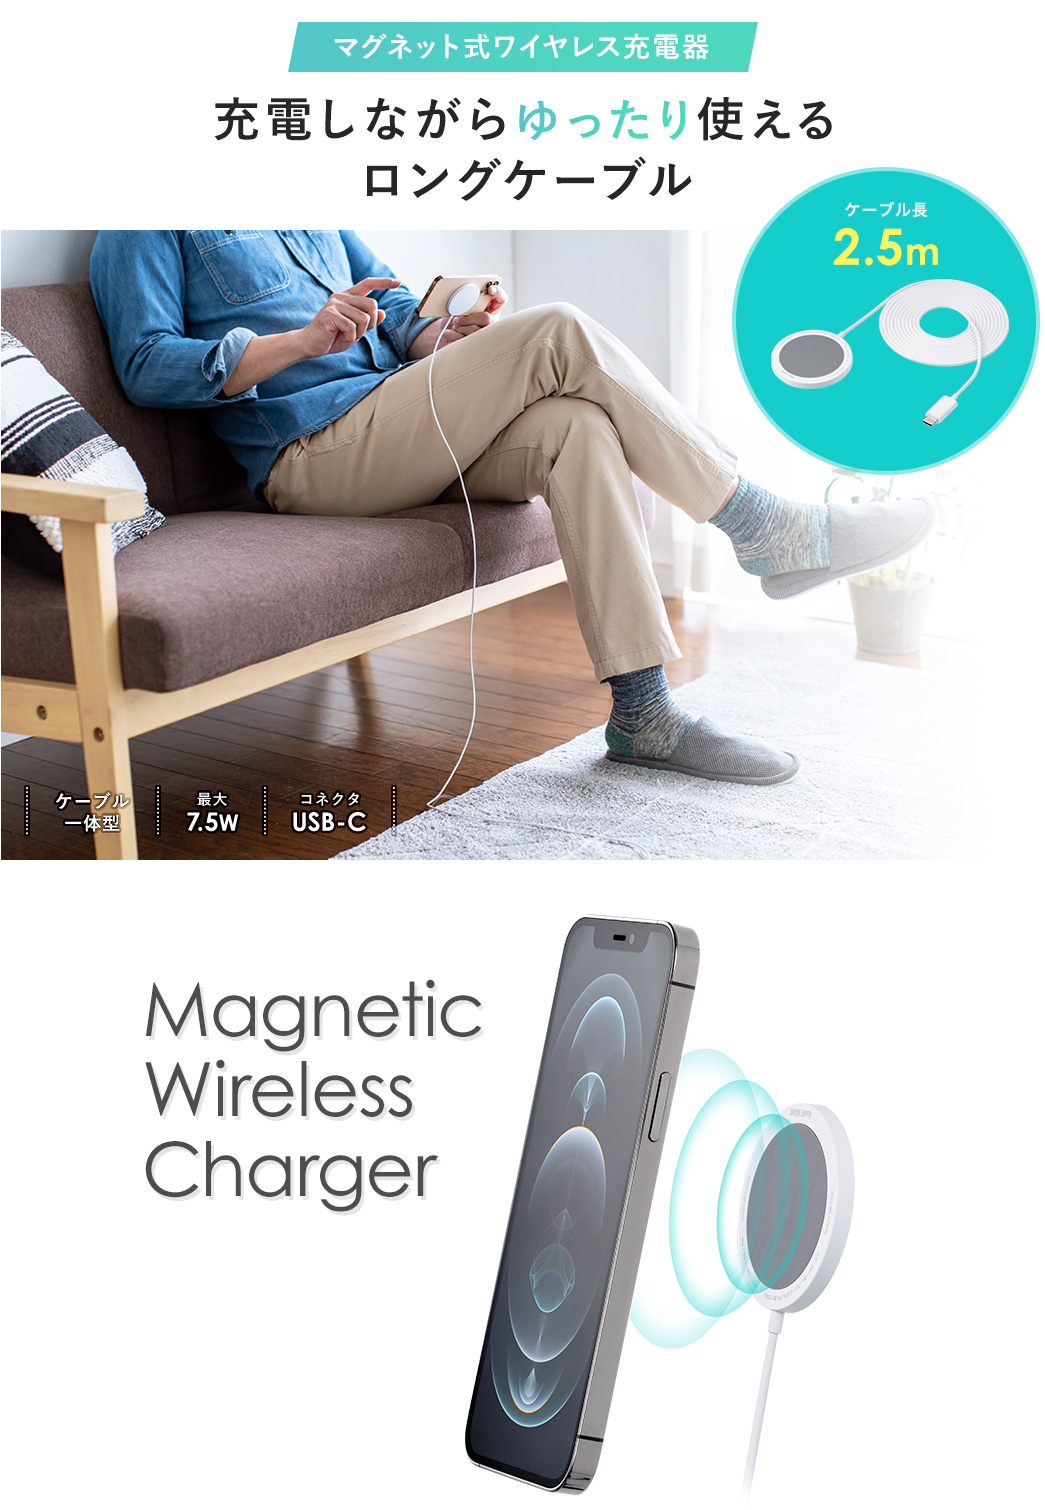 マグネット式ワイヤレス充電器 充電しながらゆったり使えるロングケーブル ケーブル長2.5m ケーブル一体型|最大7.5W|コネクタUSB-C Magnetic Wireless Charger